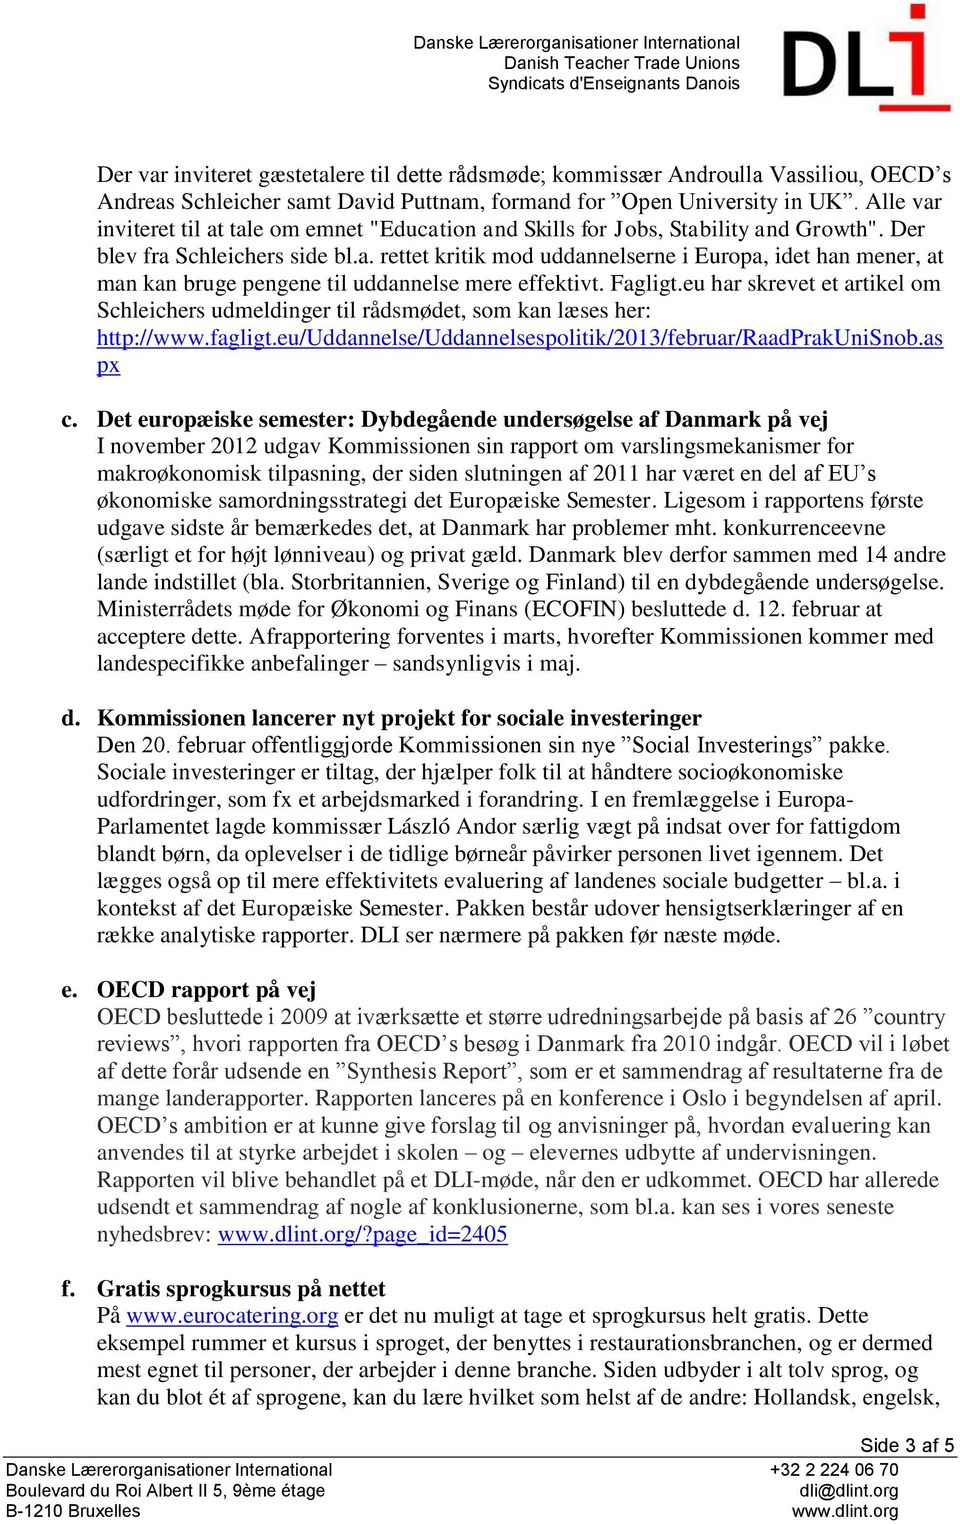 Fagligt.eu har skrevet et artikel om Schleichers udmeldinger til rådsmødet, som kan læses her: http://www.fagligt.eu/uddannelse/uddannelsespolitik/2013/februar/raadprakunisnob.as px c.